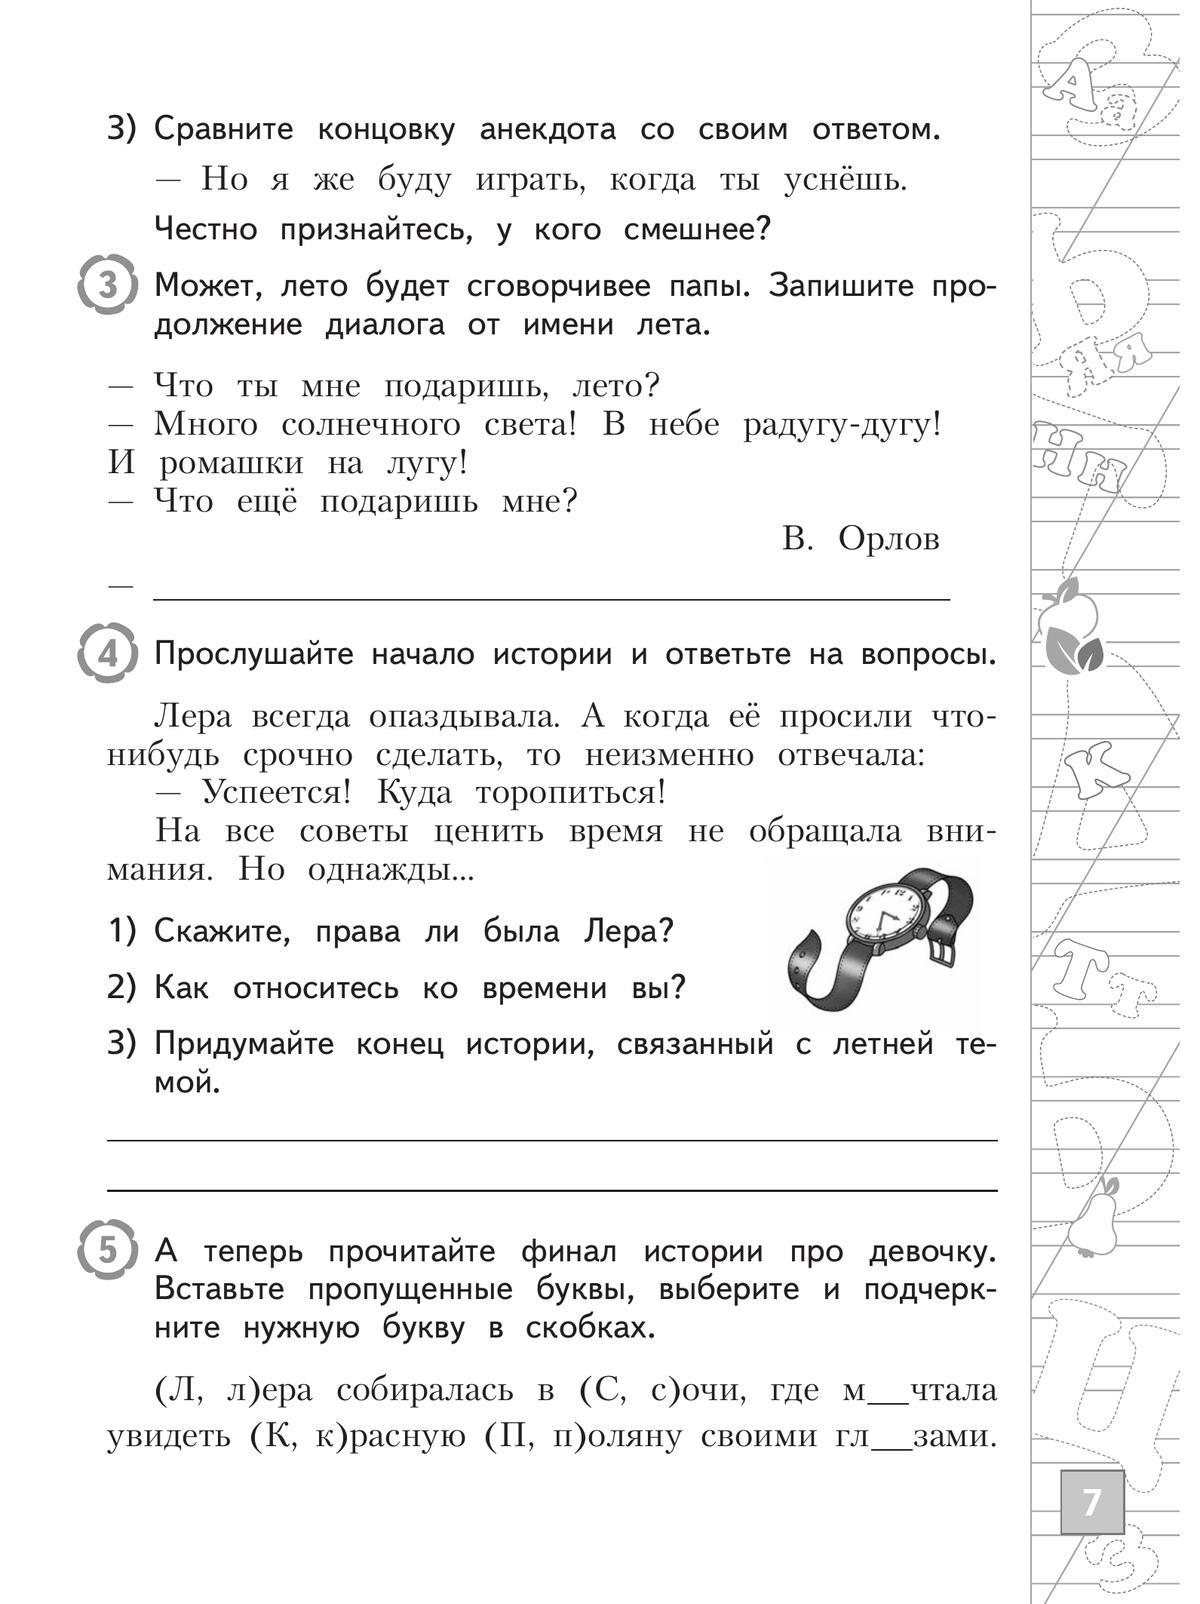 Русский язык. Тетрадь летних заданий. 2 класс 5